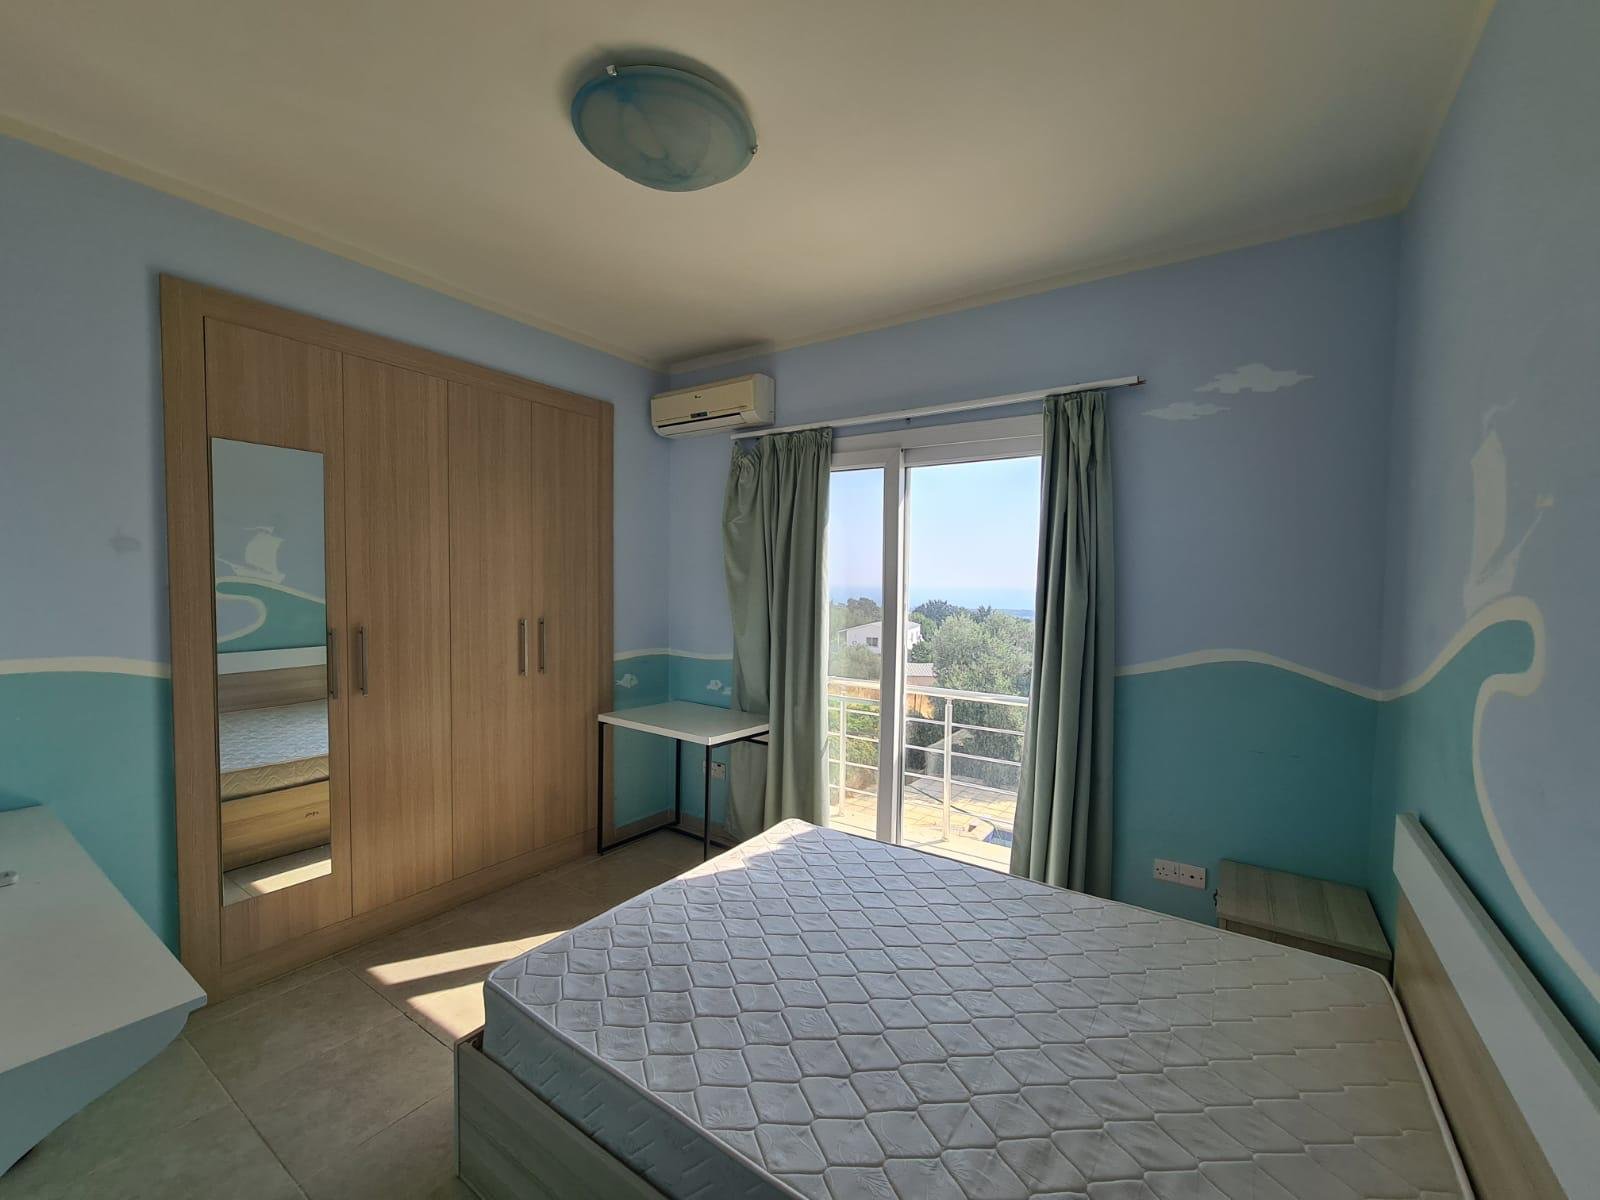 3 bedroom villa for sale in Kyrenia, Karshiyaka-b11426f3-6f35-4efa-afab-8a43dde65557